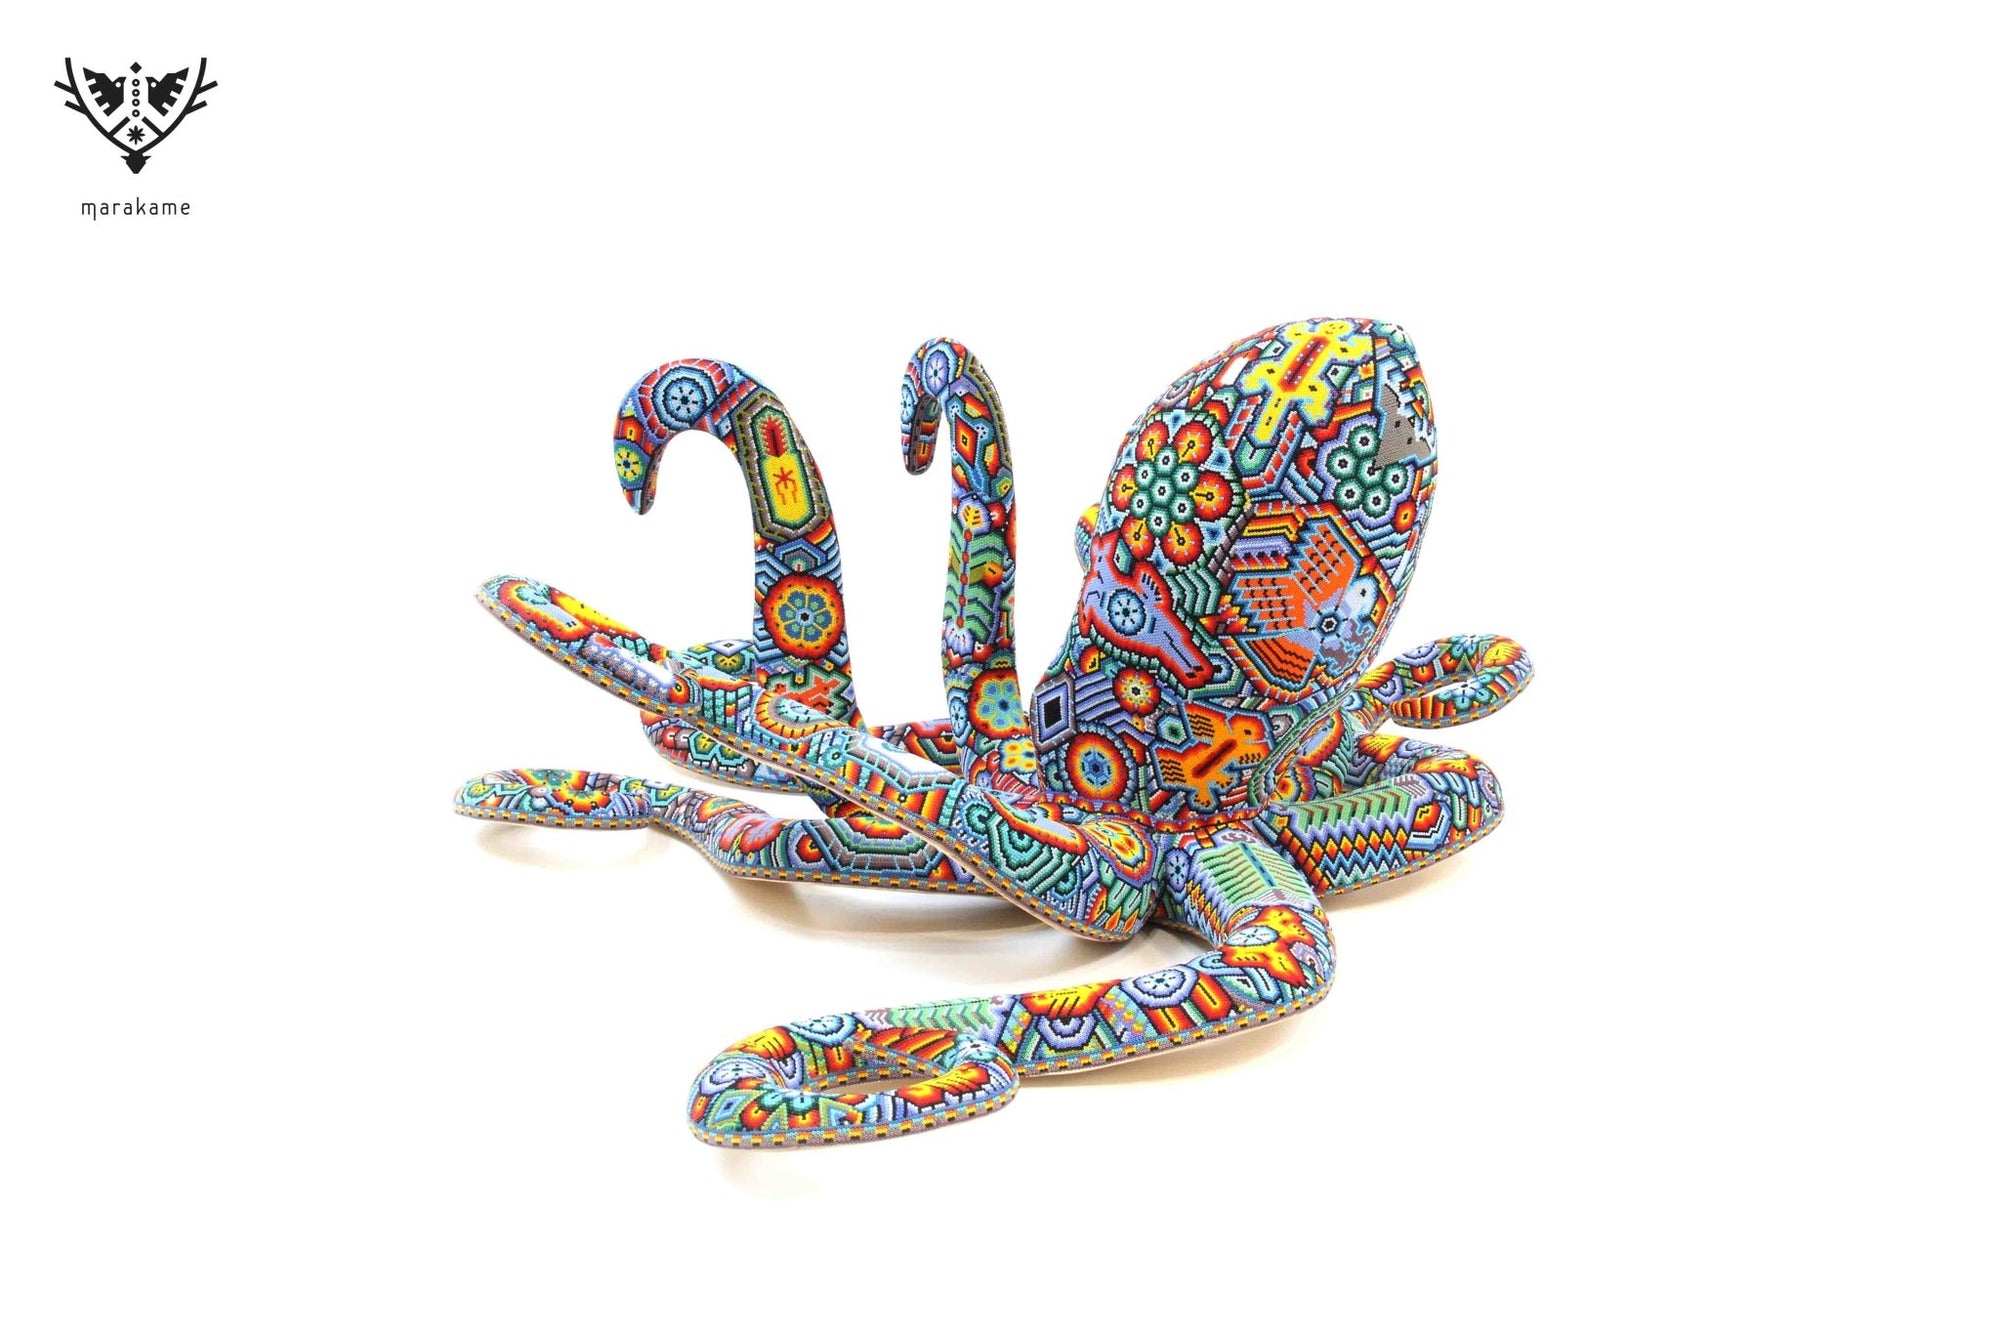 Huichol Squid Art Sculpture - Haramara - Huichol Art - Marakame